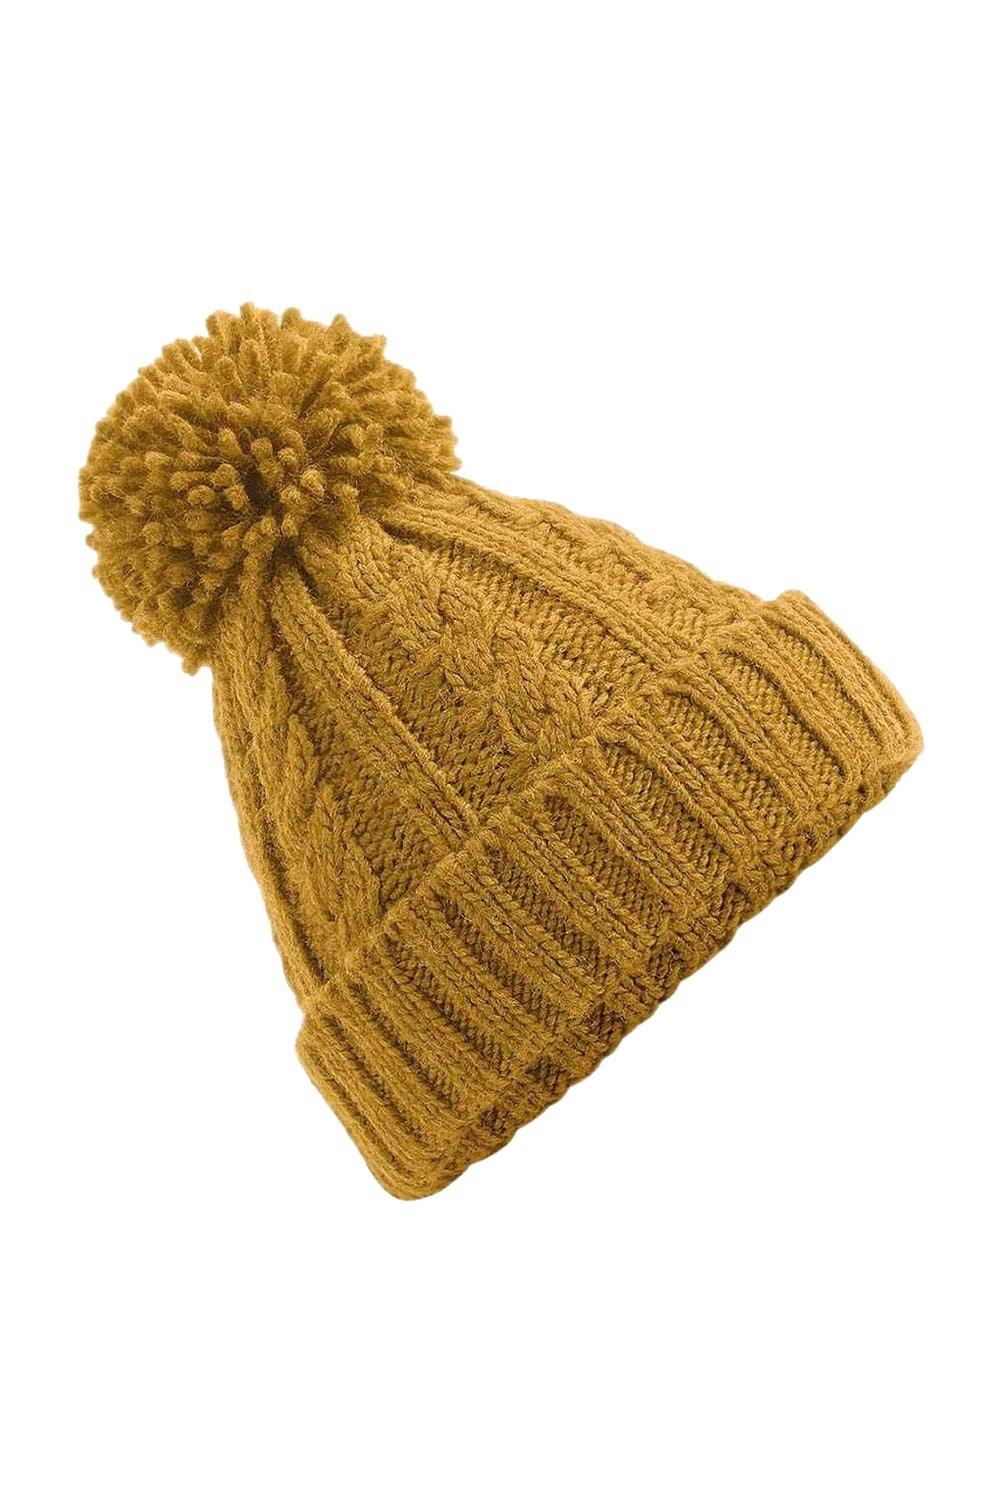 Меланжевая шапка косой вязки Beechfield, желтый